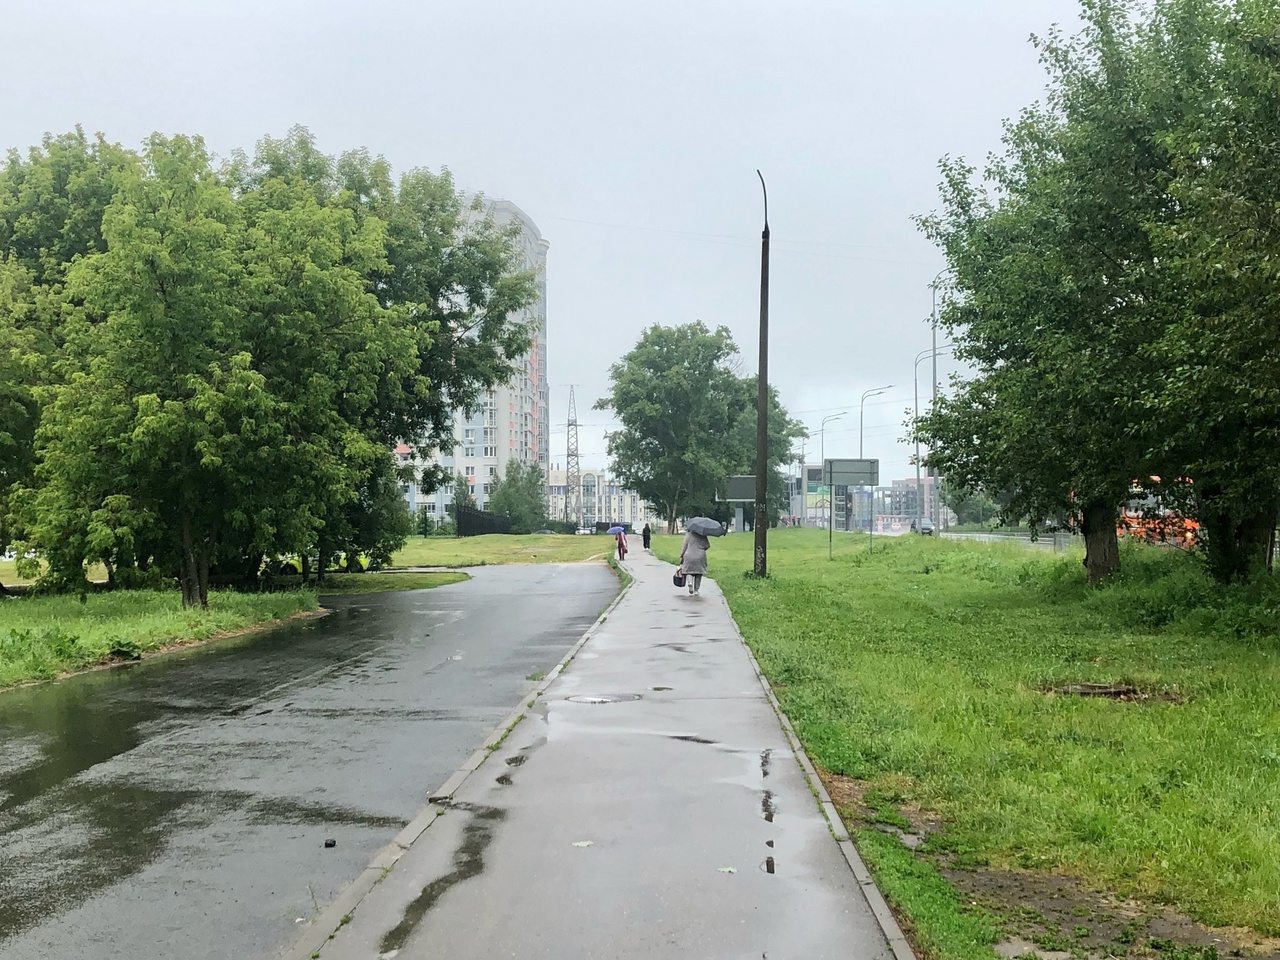 Последний день затянувшейся рабочей недели в Нижнем Новгороде обещает быть дождливым 